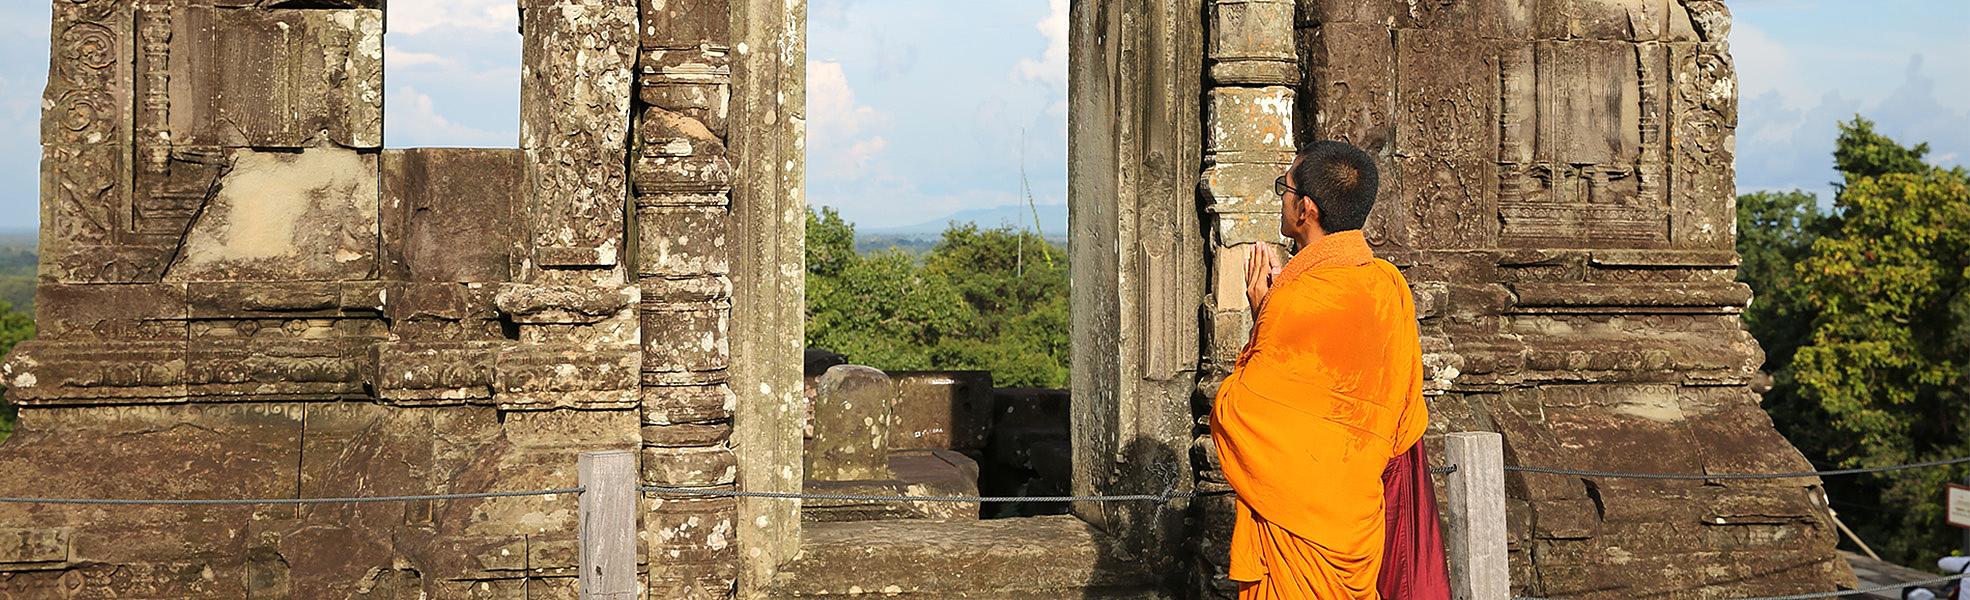 Explore Vietnam, Cambodia, Laos & Thailand